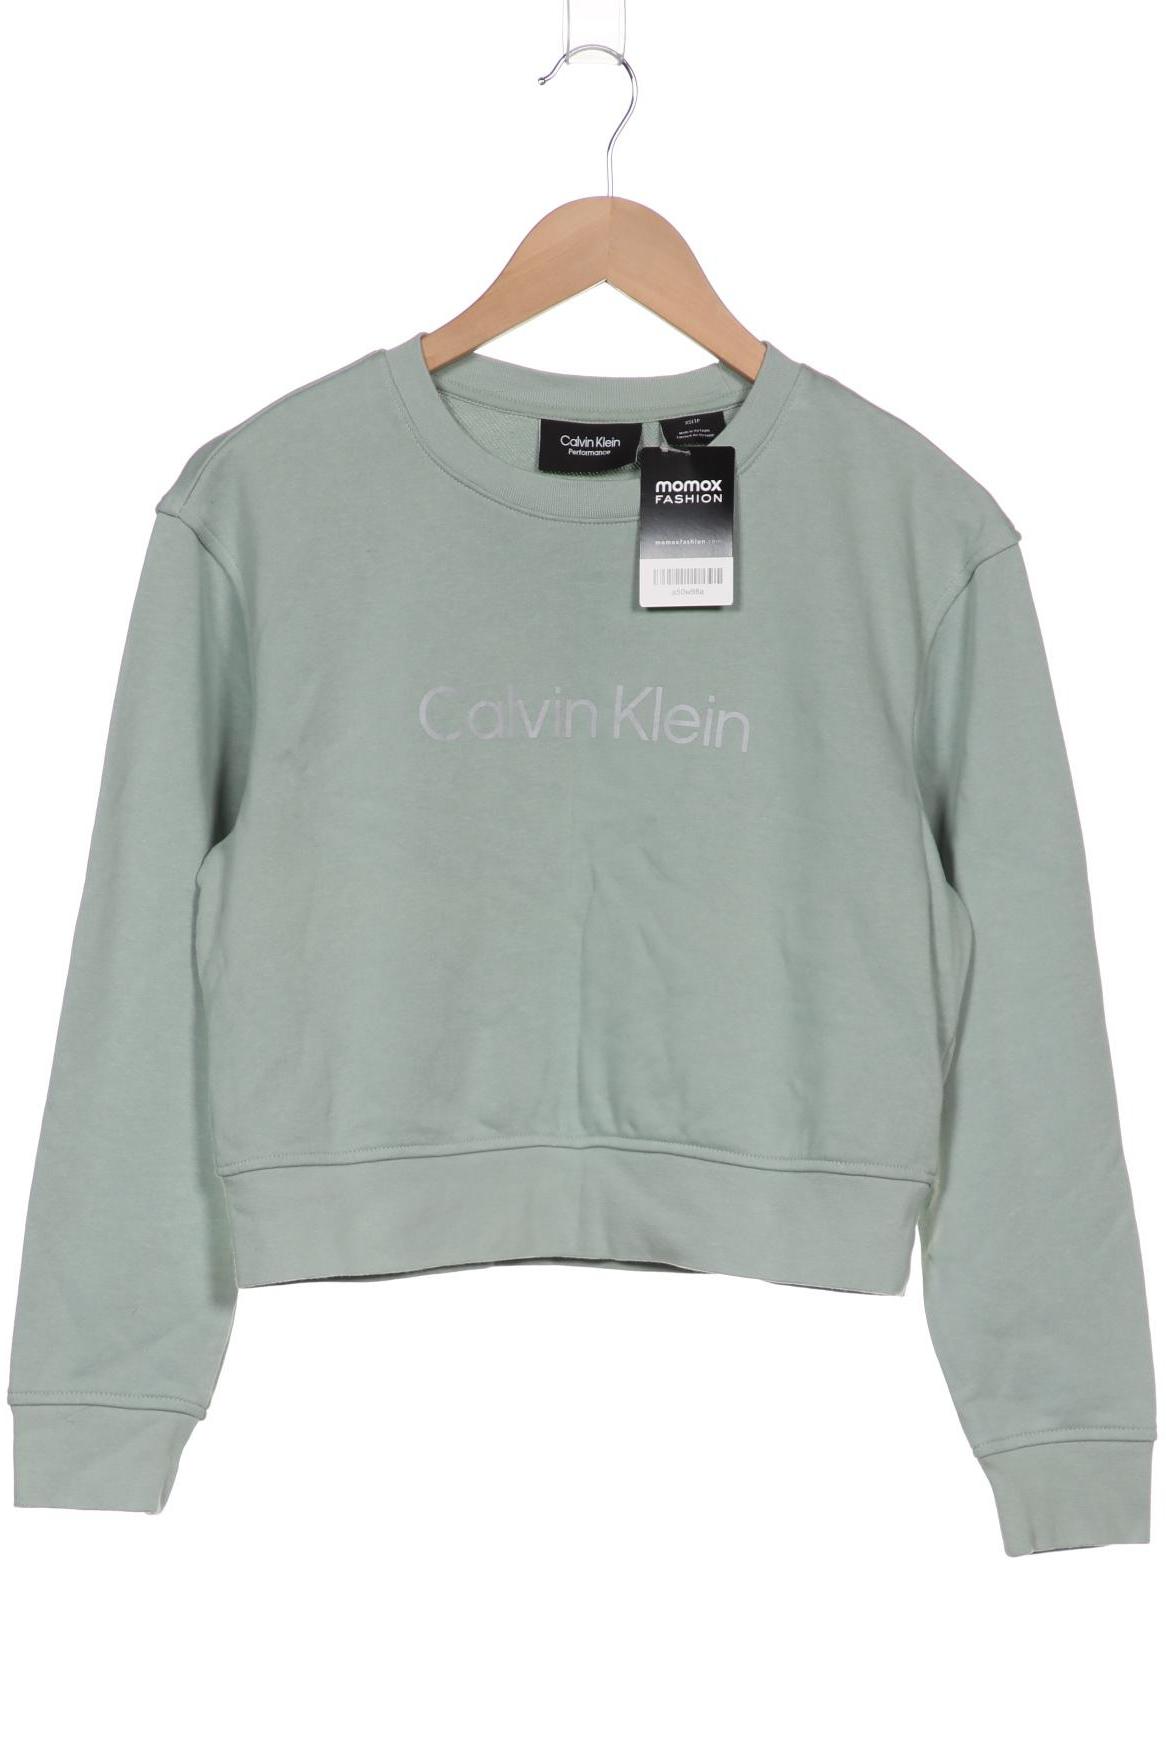 Calvin Klein Damen Sweatshirt, hellgrün von Calvin Klein